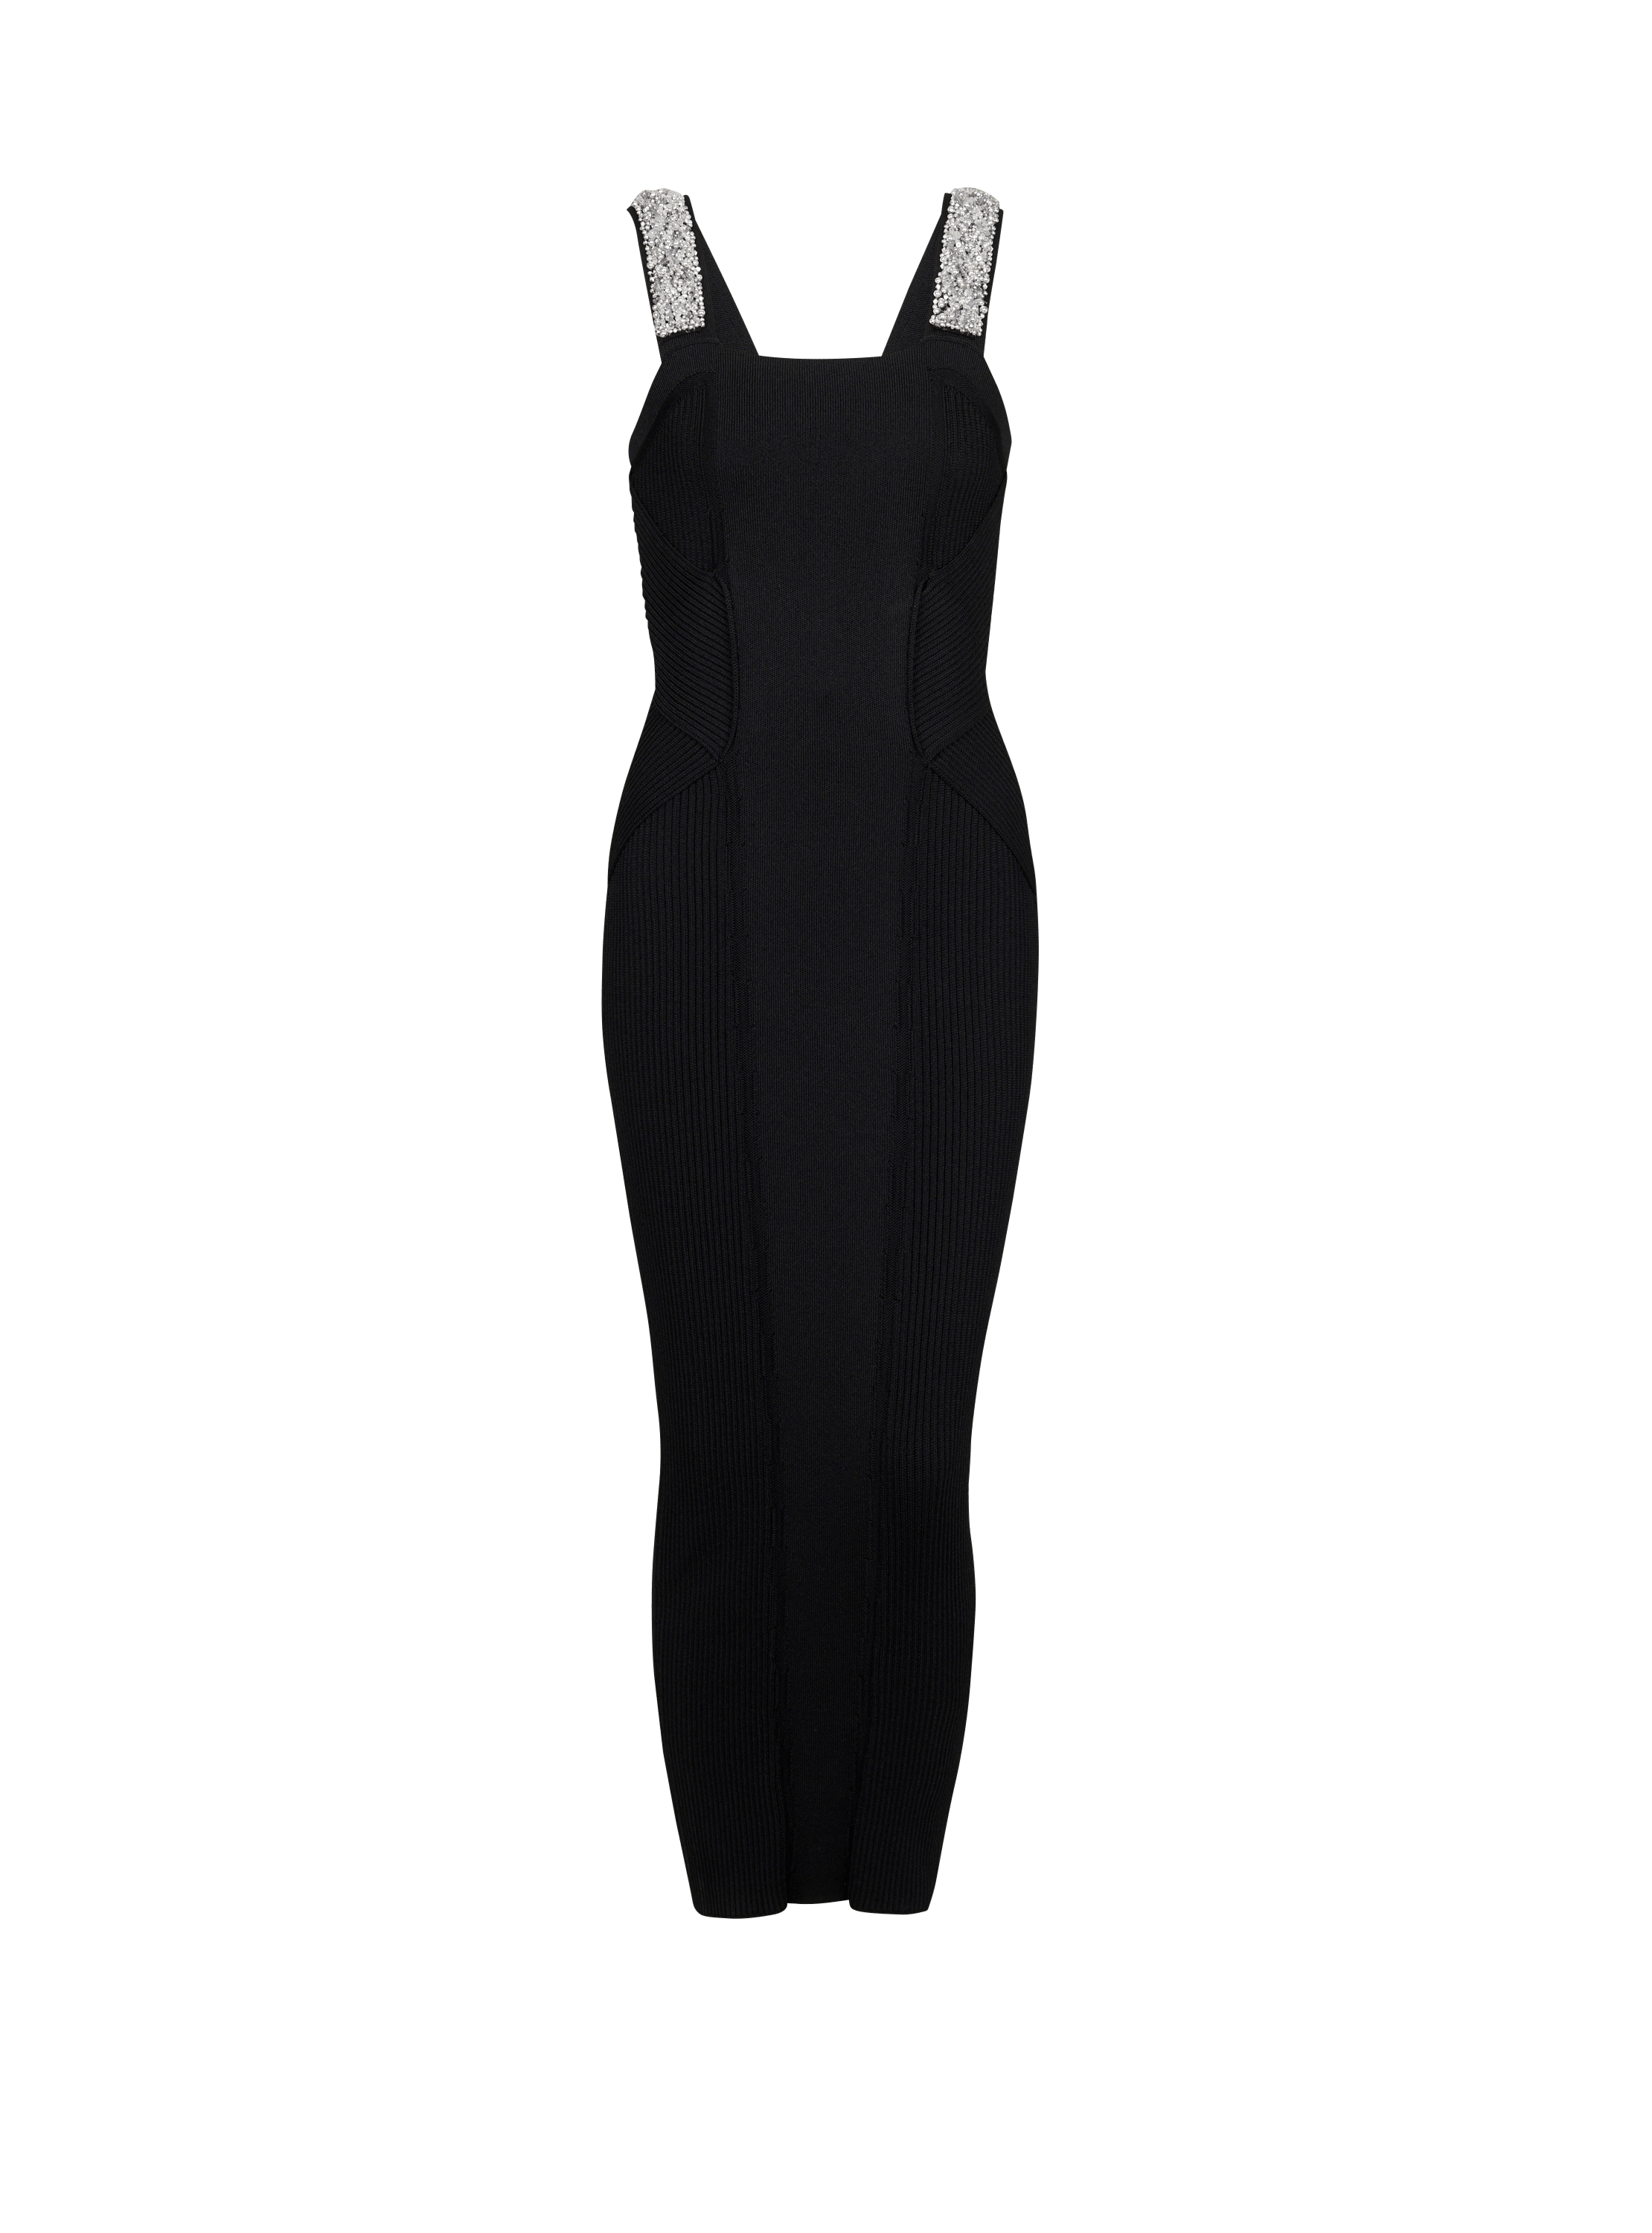 Embroidered long knit dress, black, hi-res